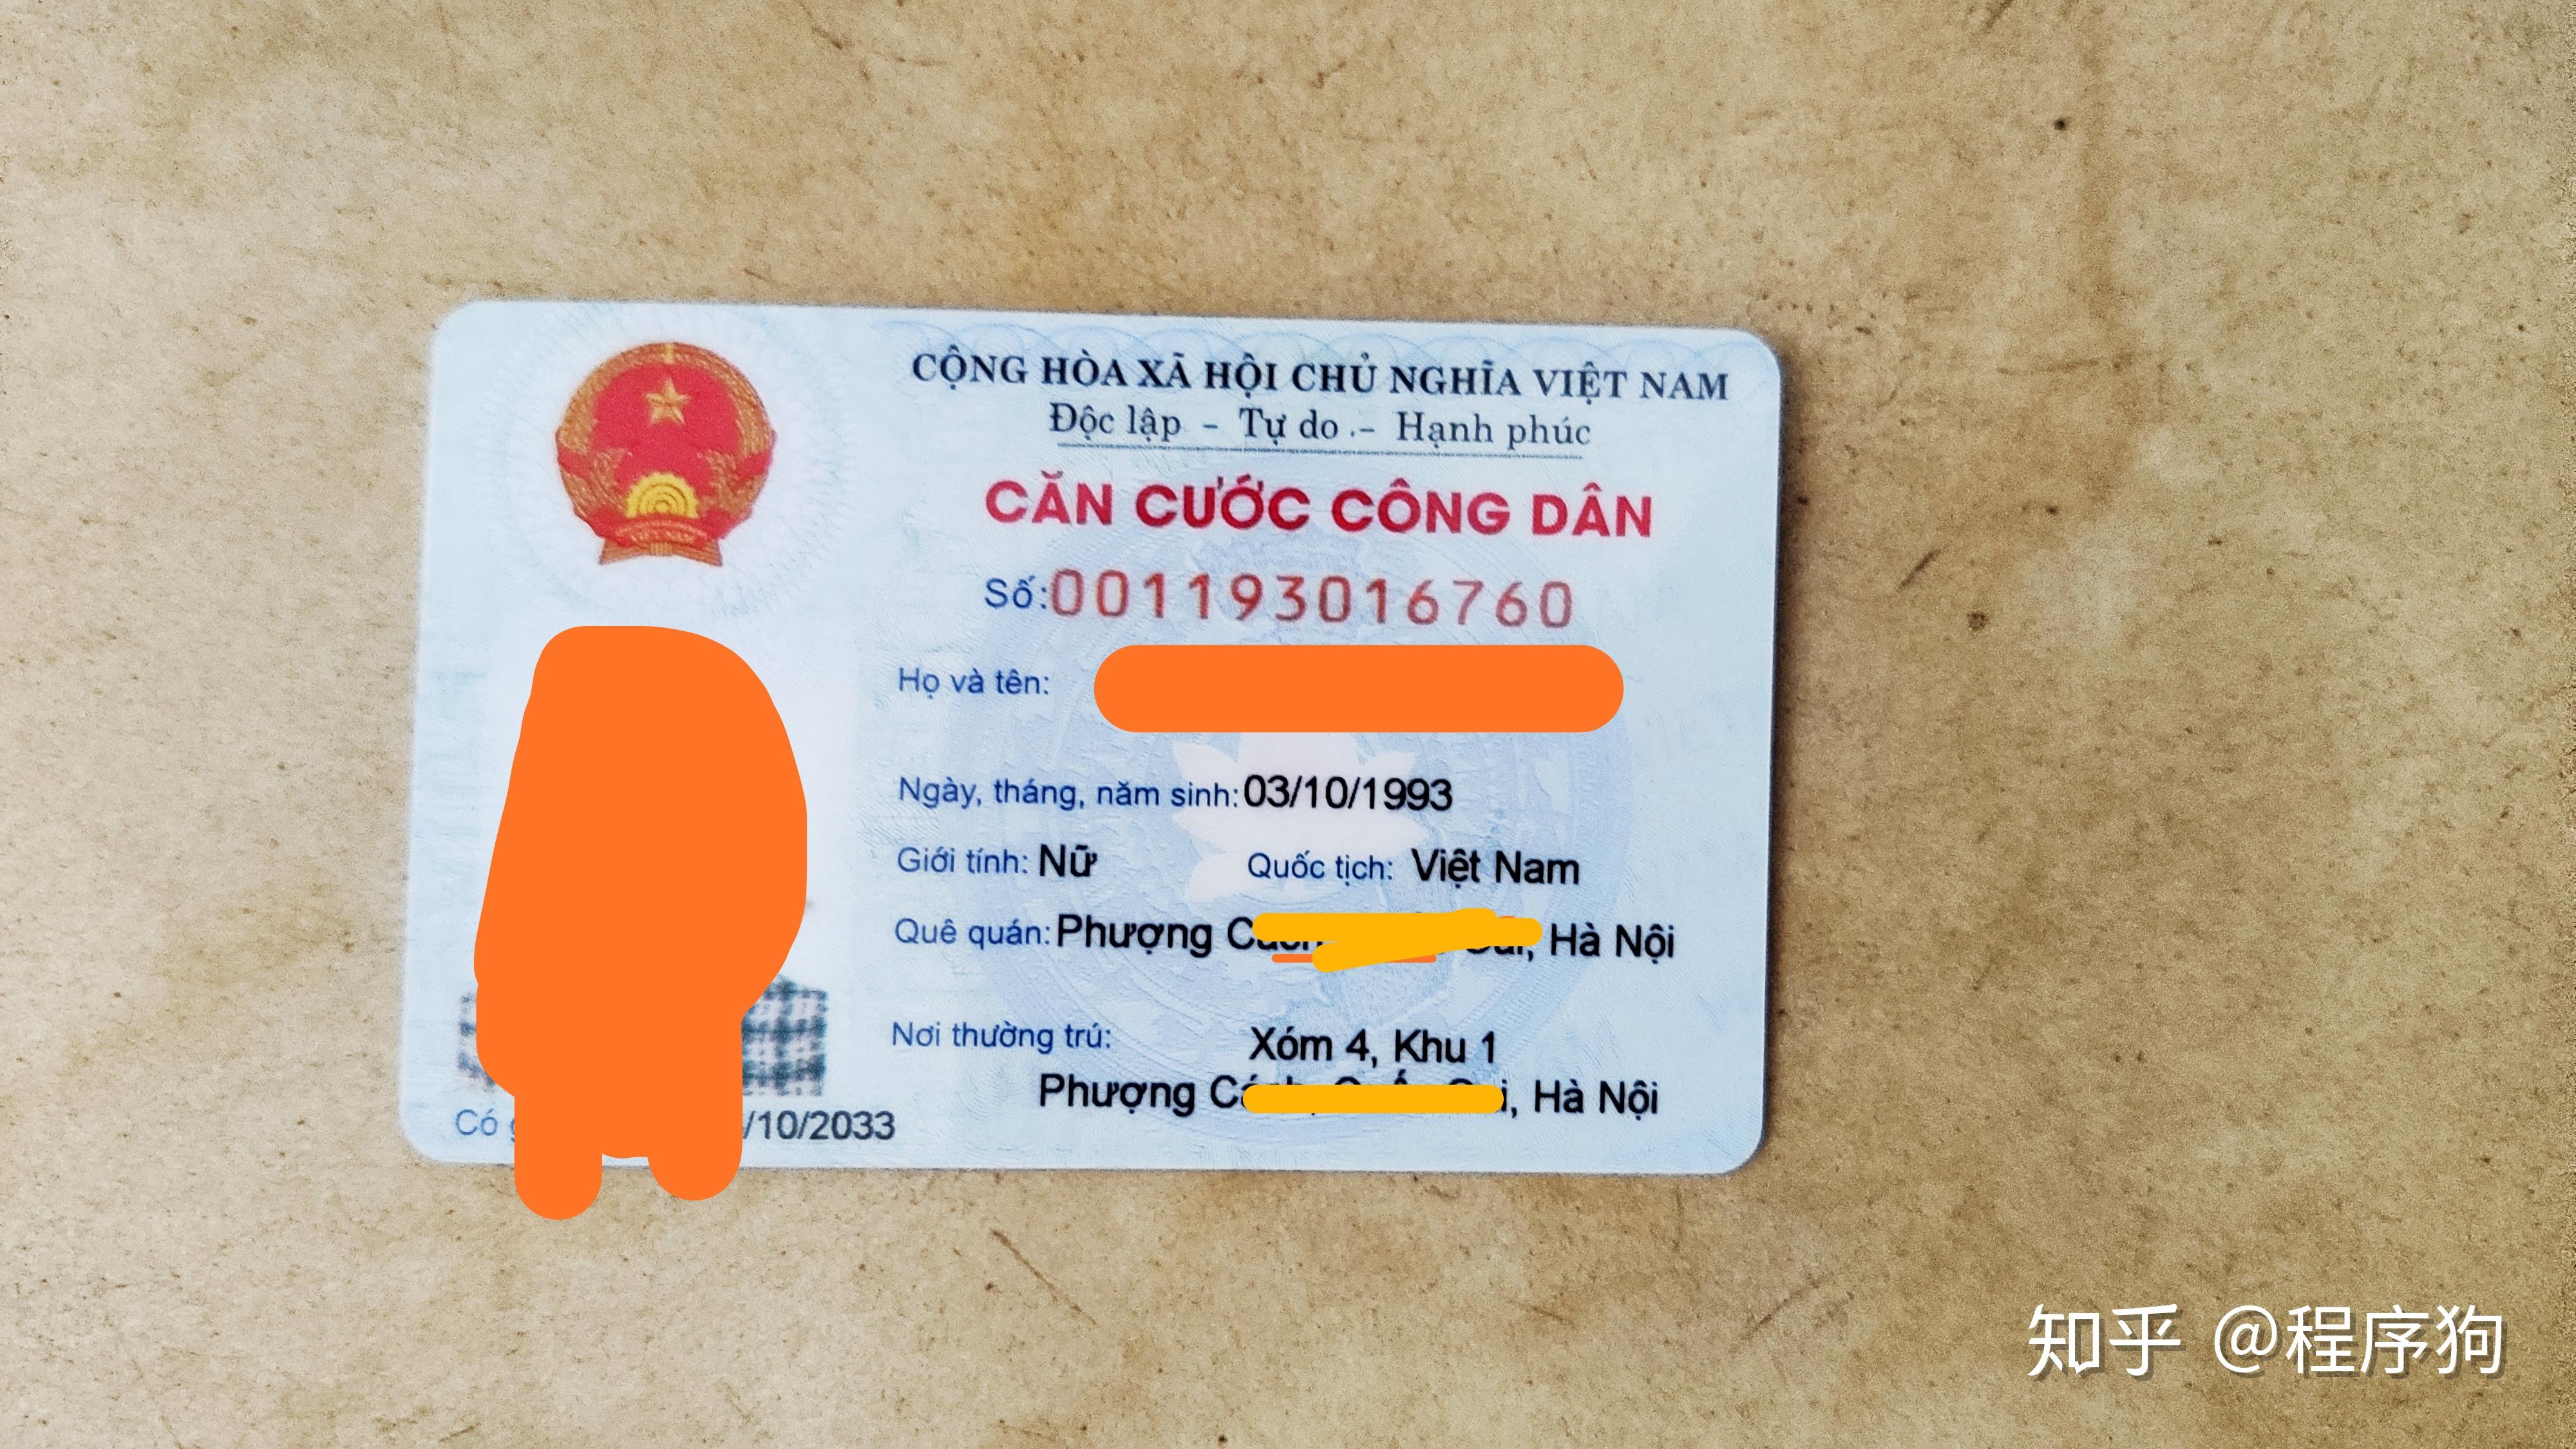 越南护照 库存照片. 图片 包括有 移民, 识别, 对象, 纸张, 移出, 公民身份, 确定, 权威, 符号 - 47300478